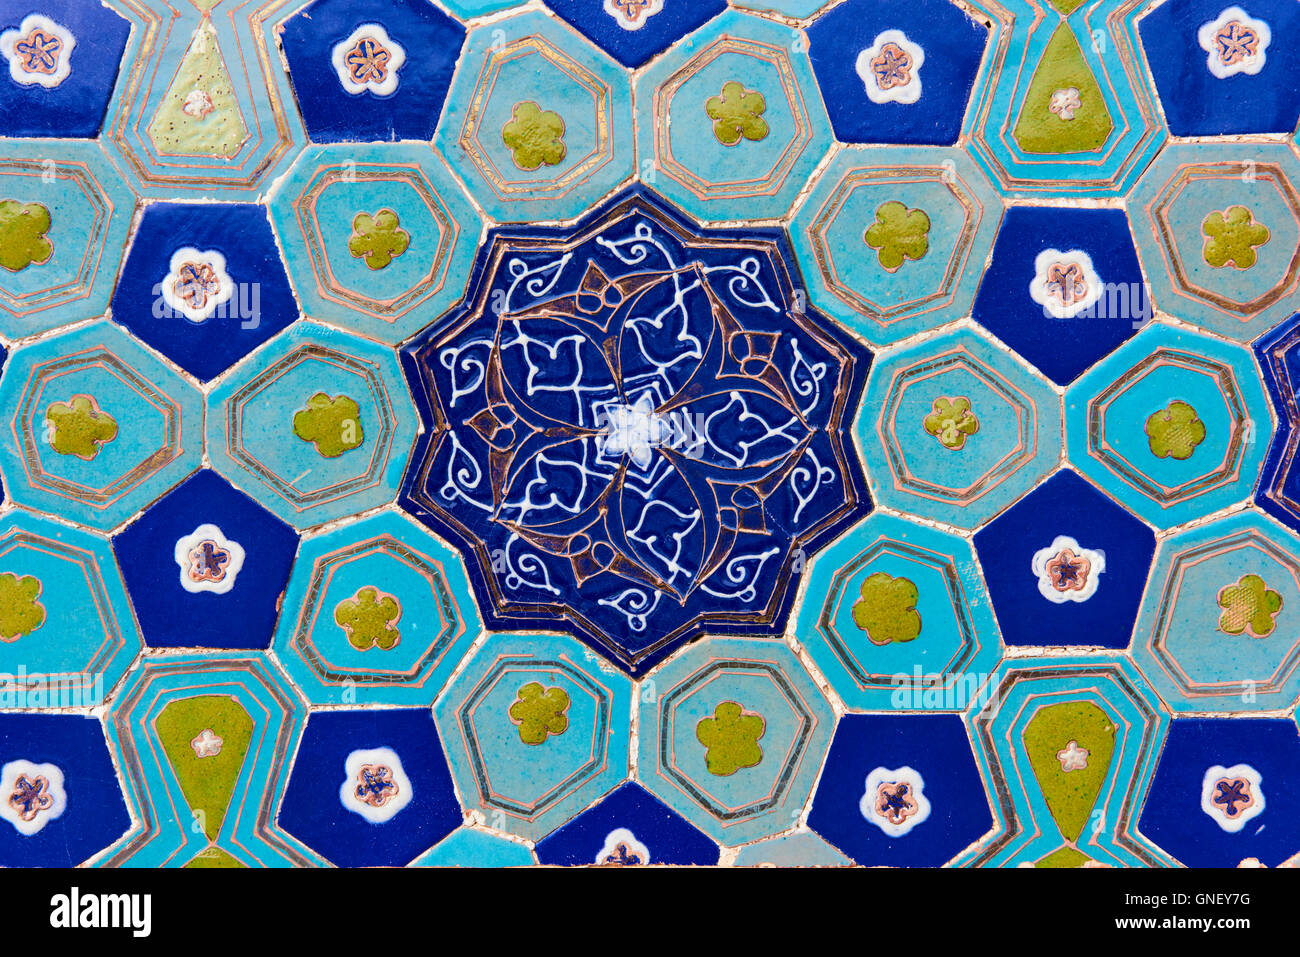 Uzbekistan, Samarkand, Unesco World Heritage, Shah i Zinda mausoleum, blue tile Stock Photo